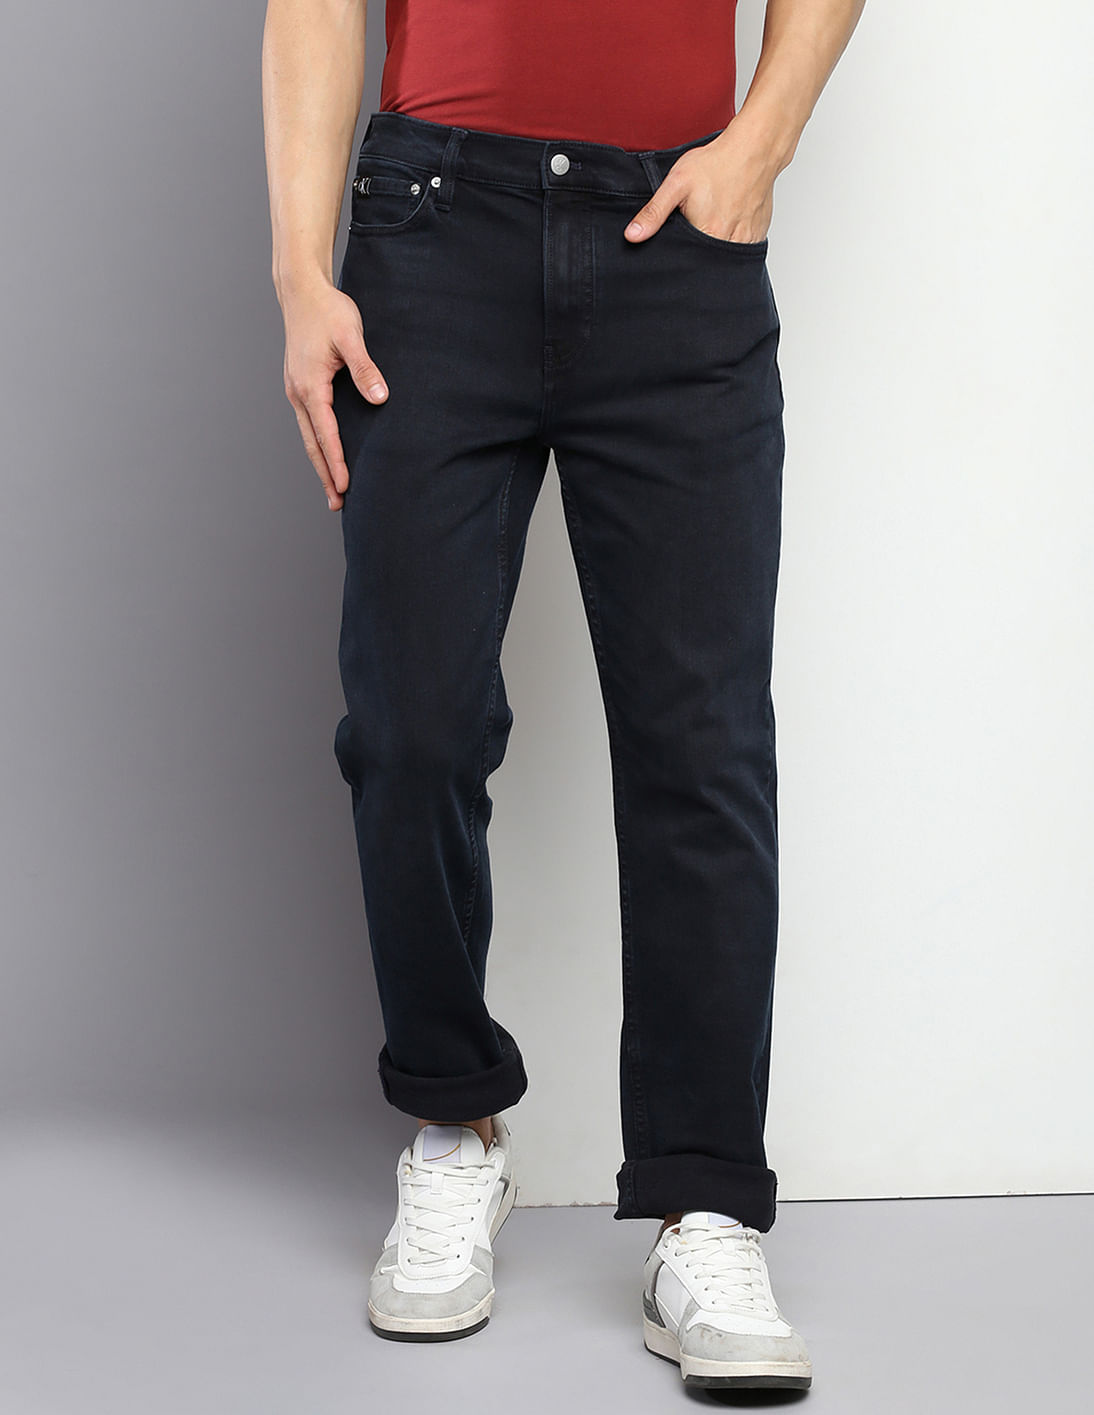 Buy Calvin Klein Slim Fit Dark Wash Jeans - NNNOW.com